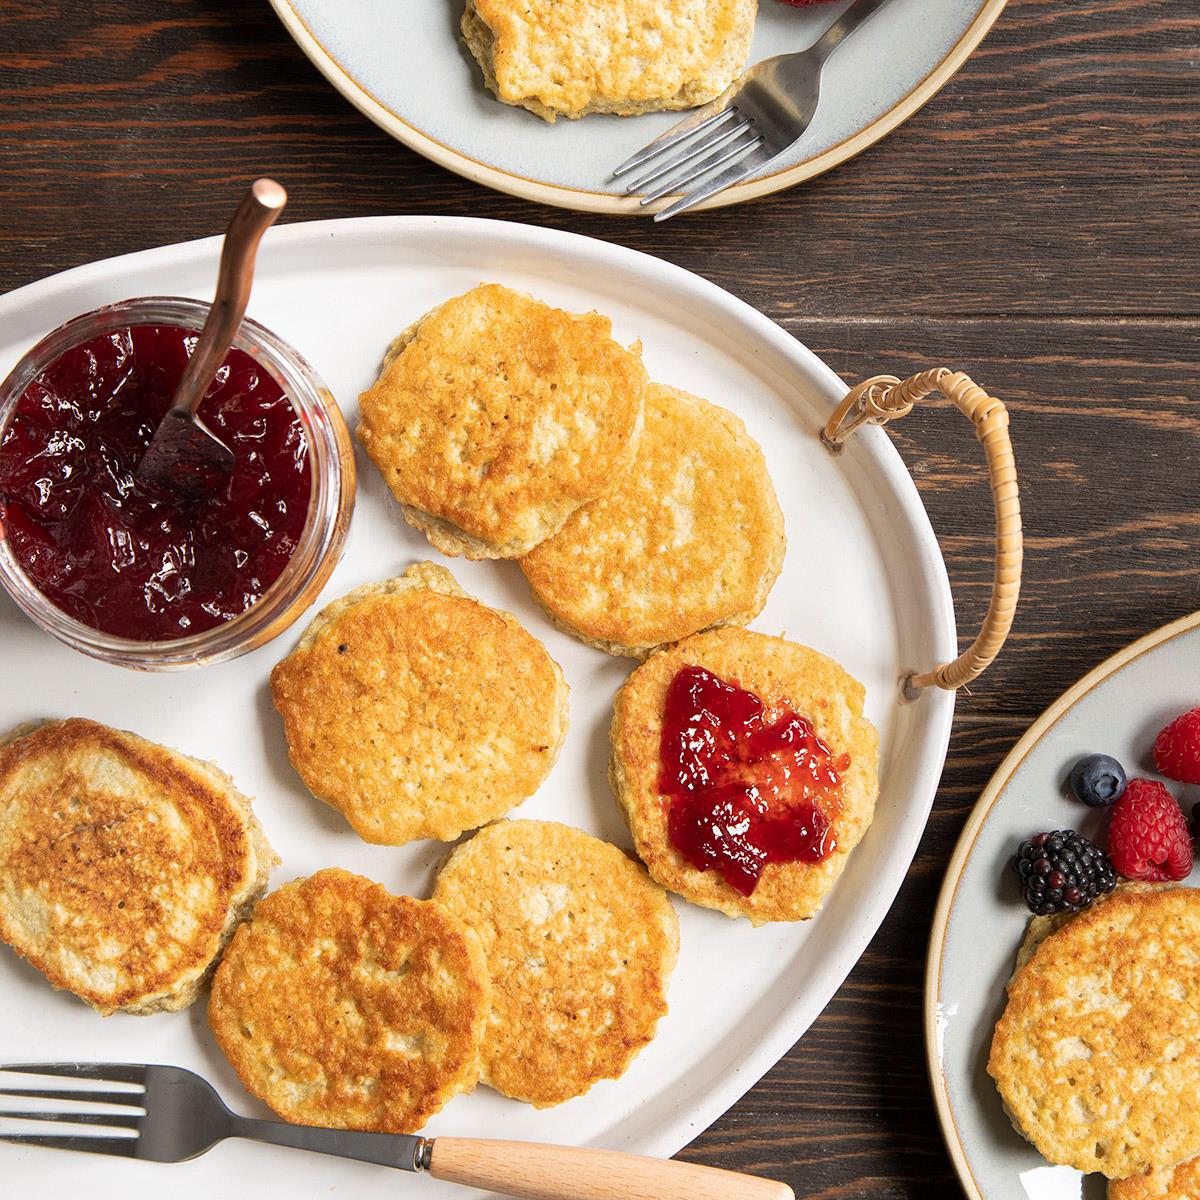 Share 34 kuva matzo meal pancakes